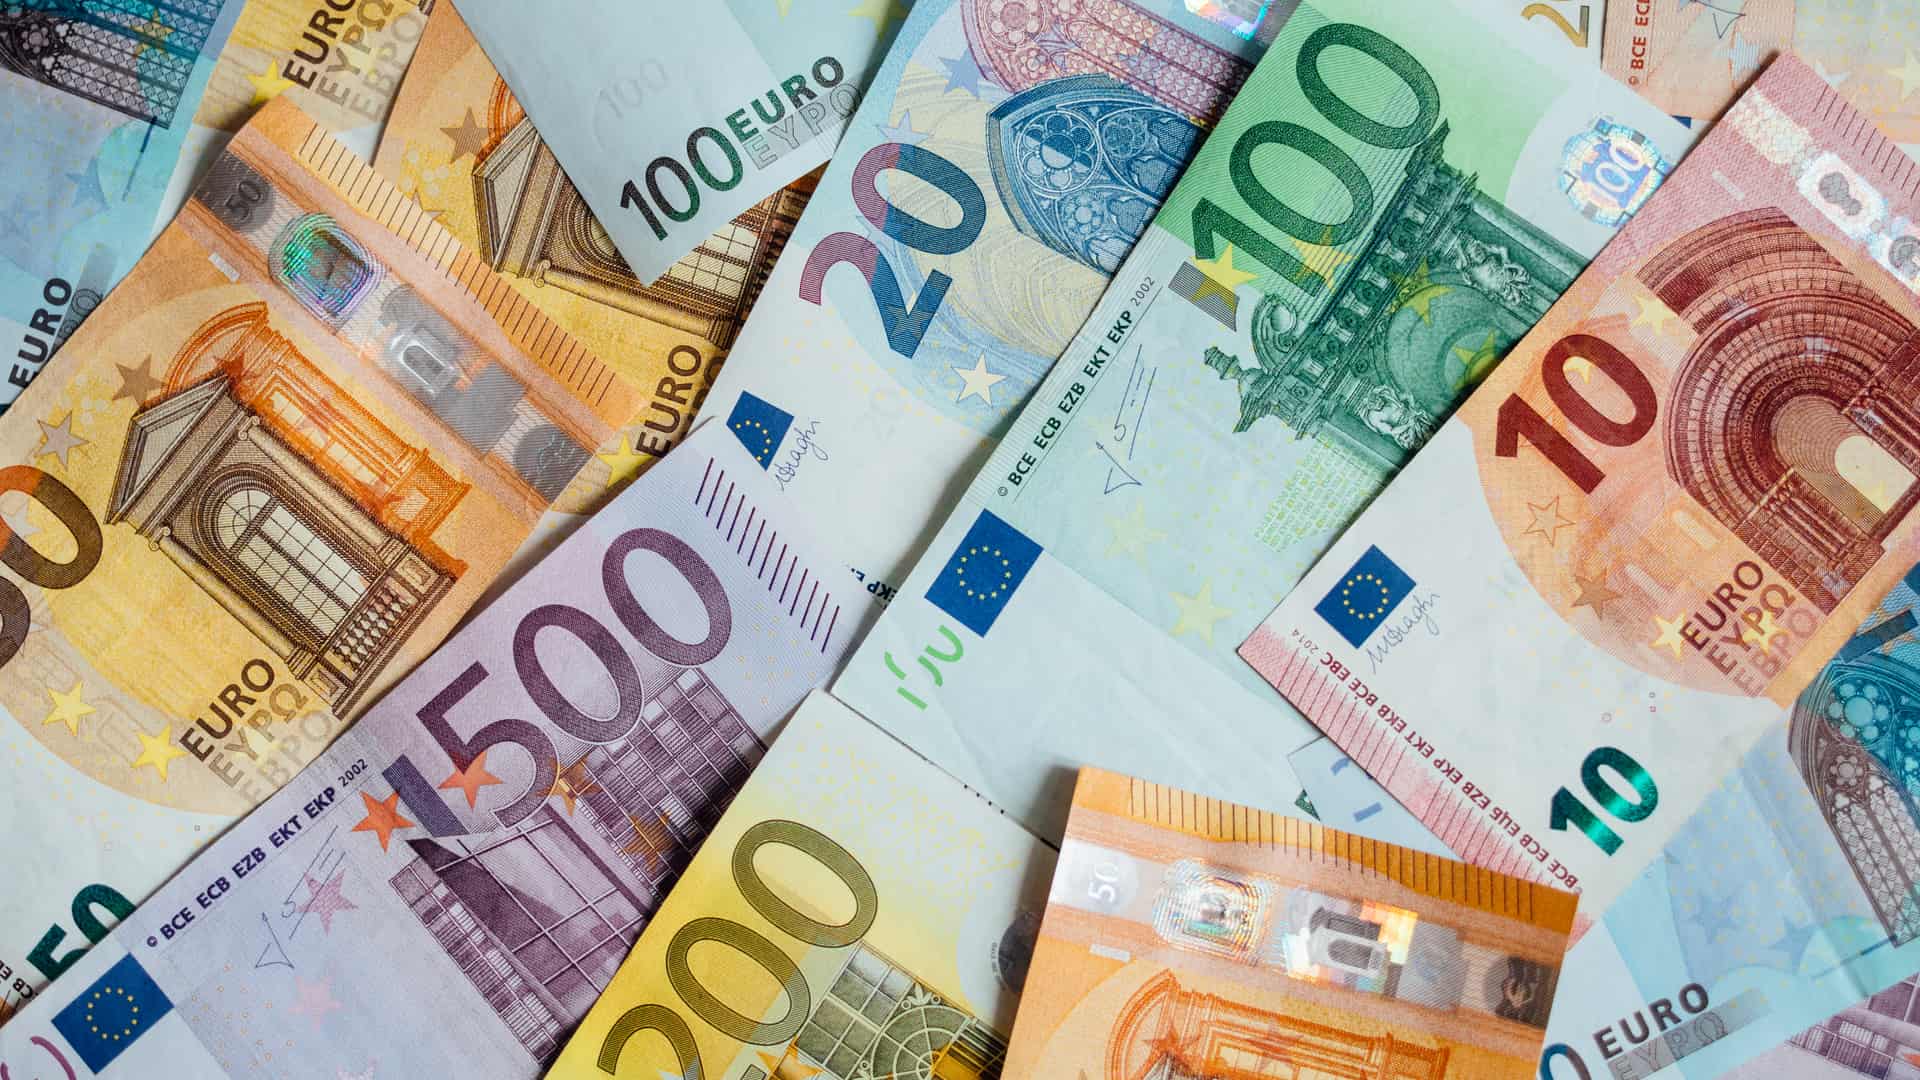 Mesa con billetes que simula el prestamo de 25000 euros